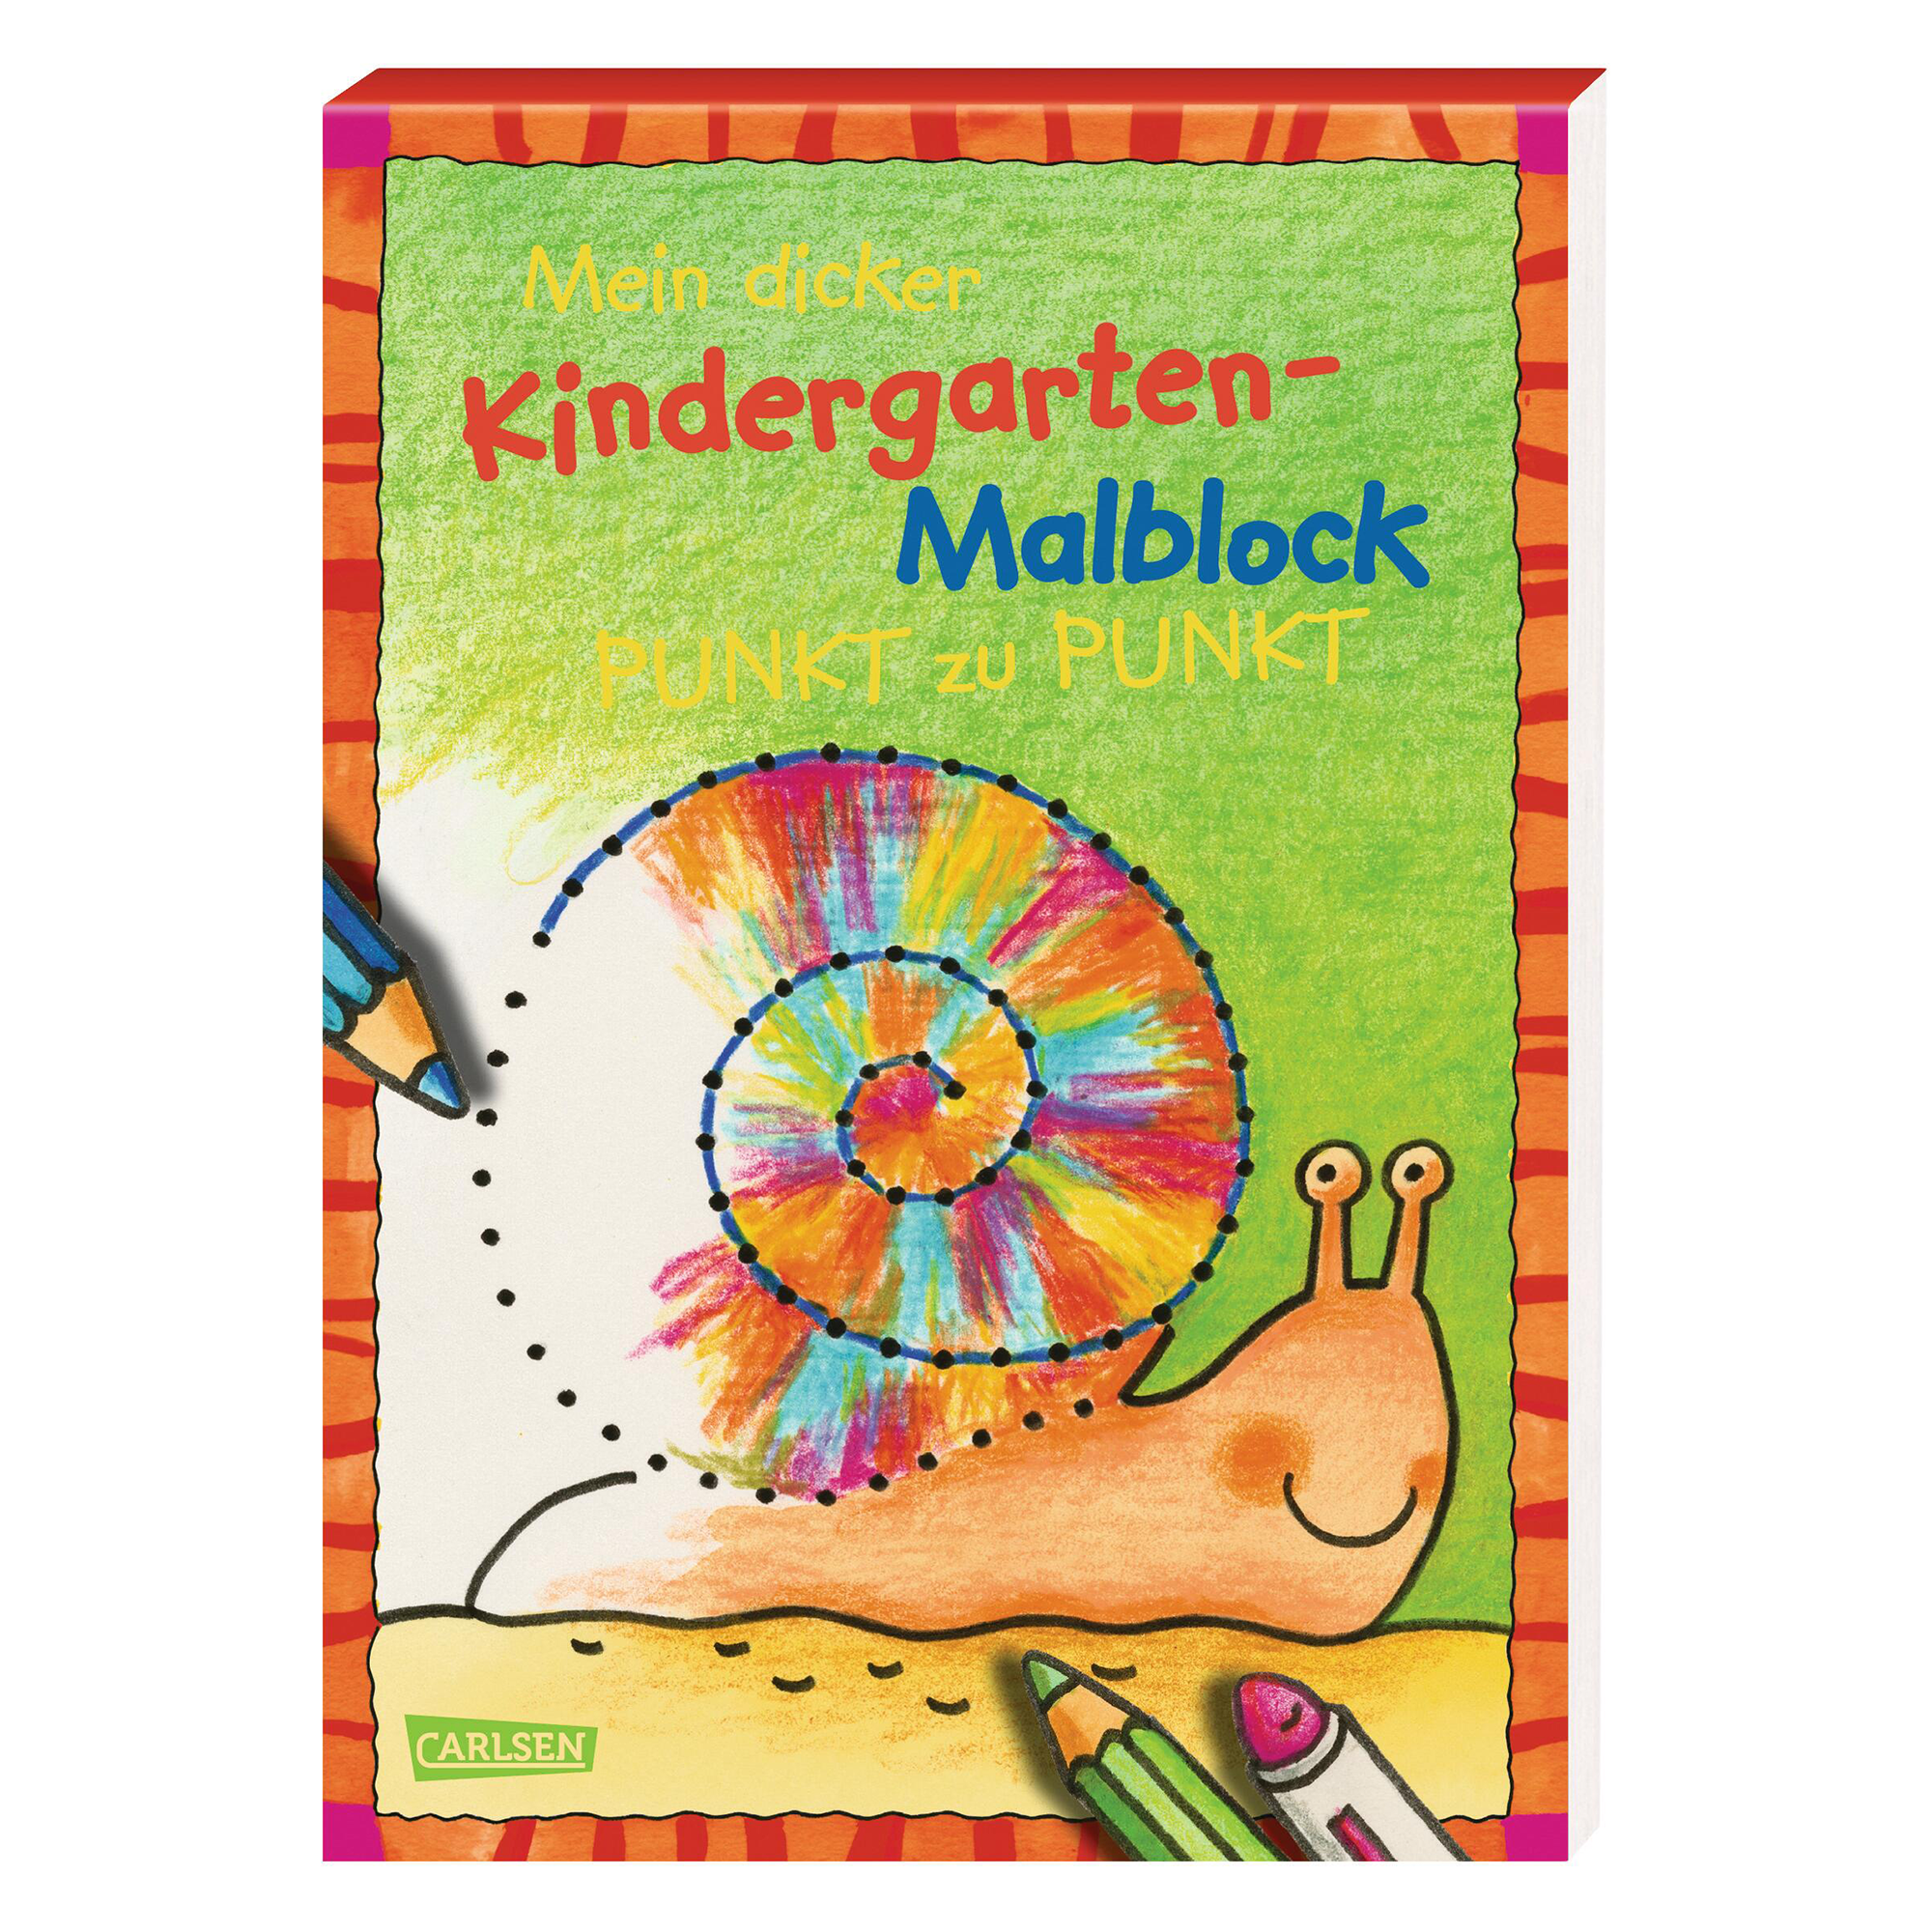 Mein dicker Kindergarten Malblock CARLSEN 2000565491273 1